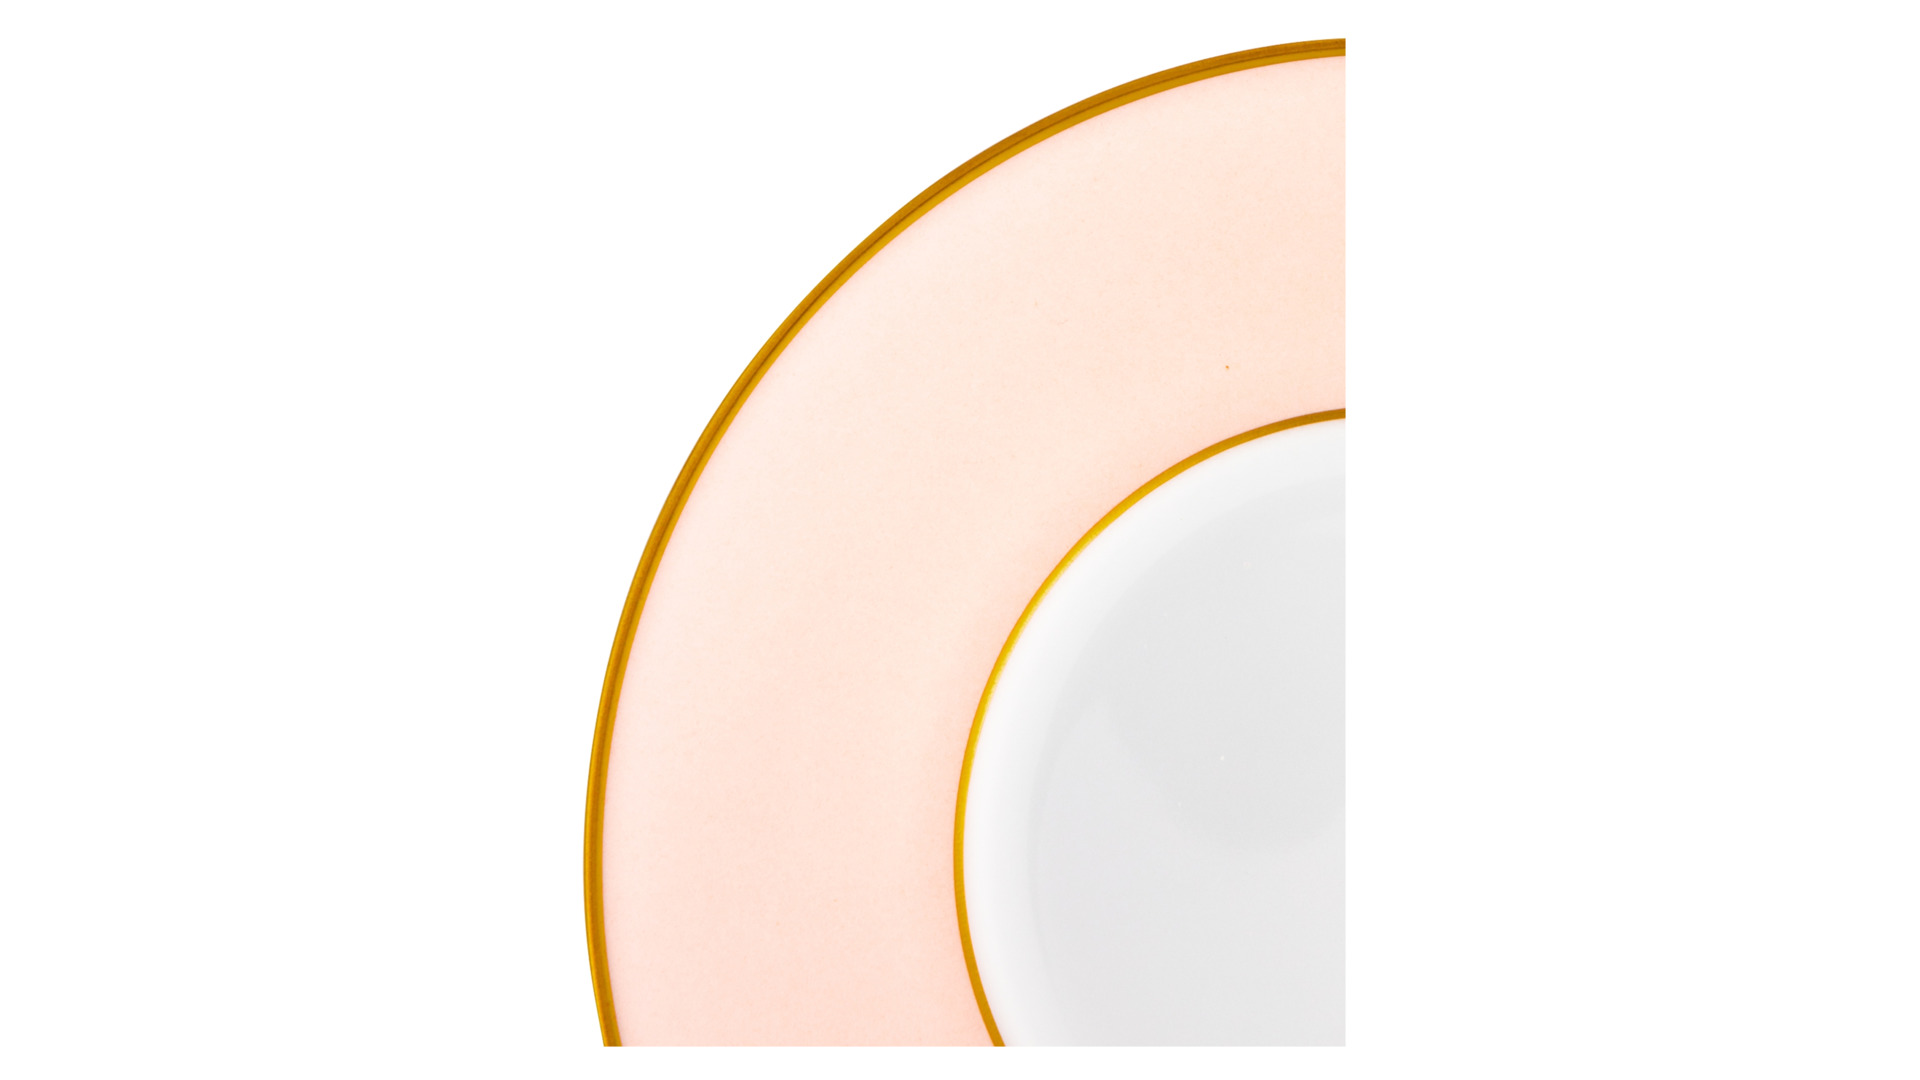 Чашка чайная с блюдцем Legle Под солнцем 150 мл, фарфор, бледно-розовая, матовый золотой кант